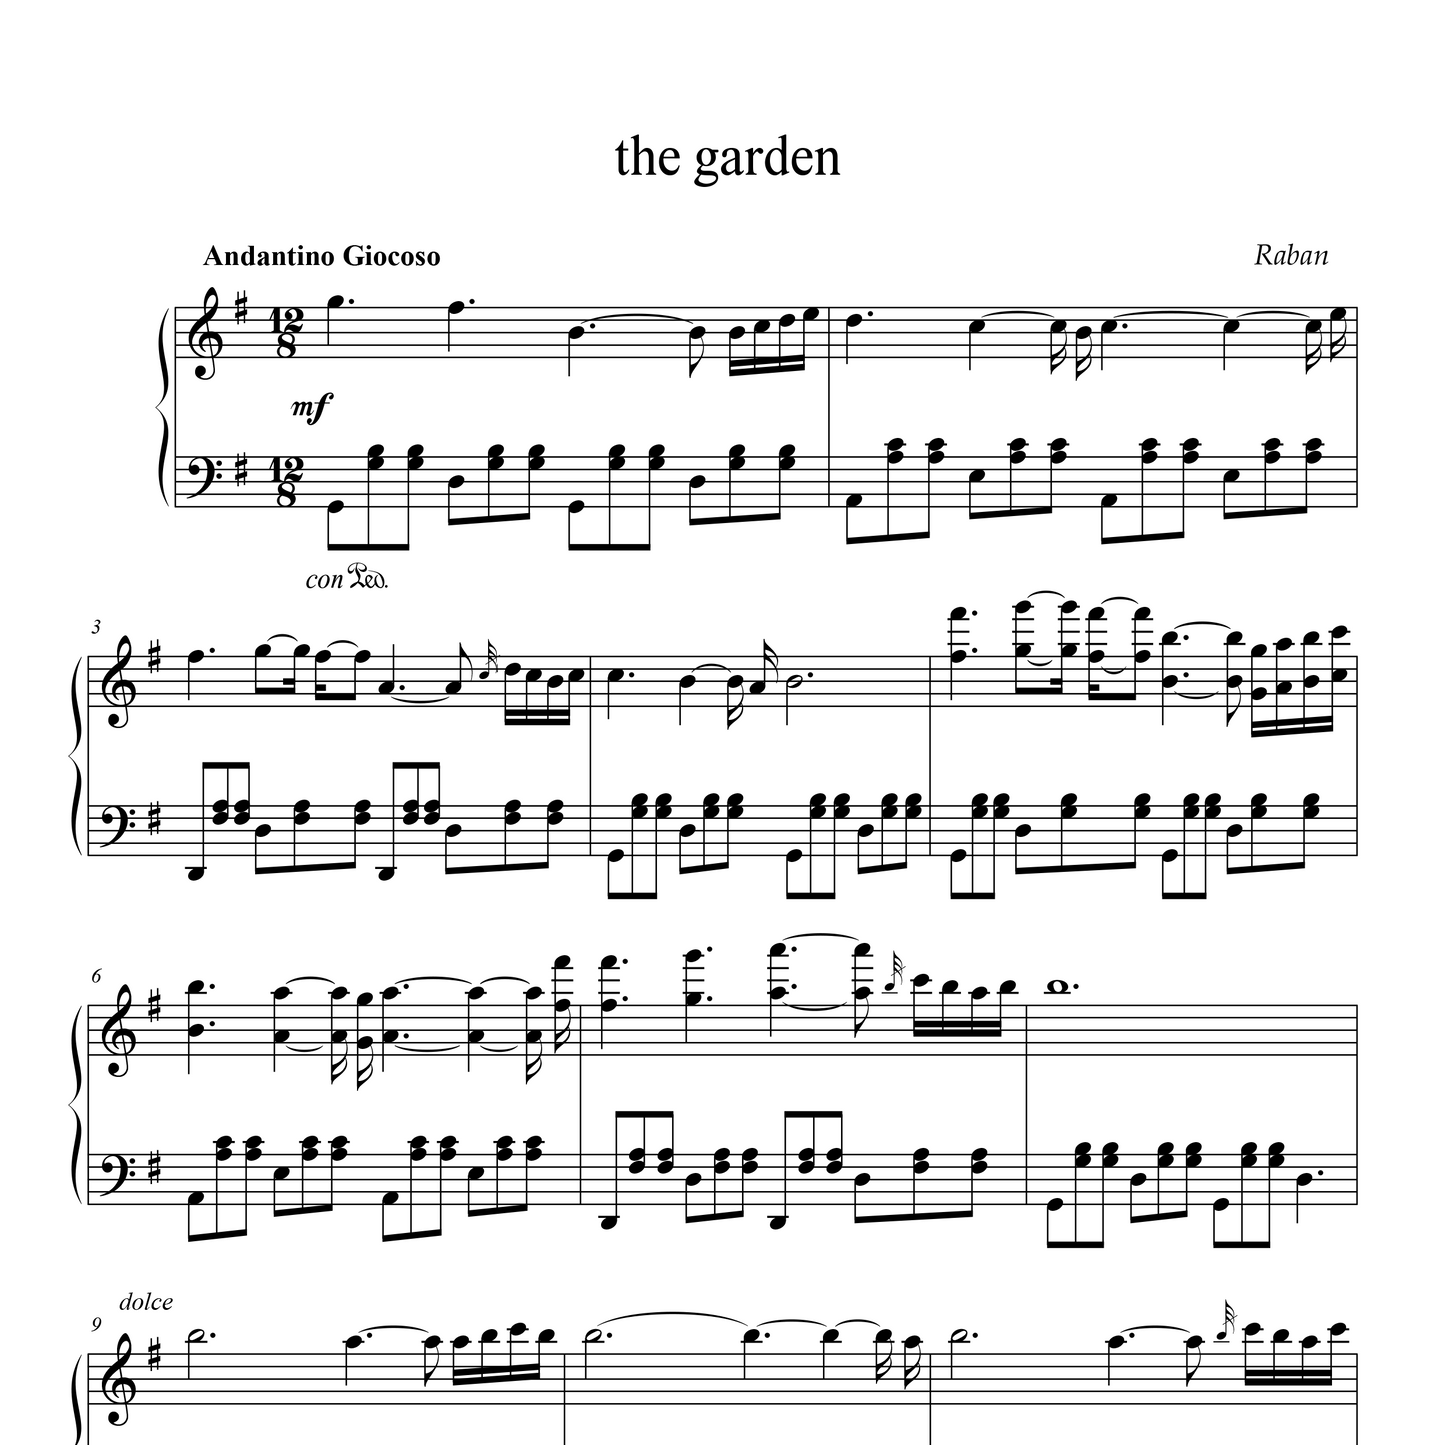 the garden - Sheet Music